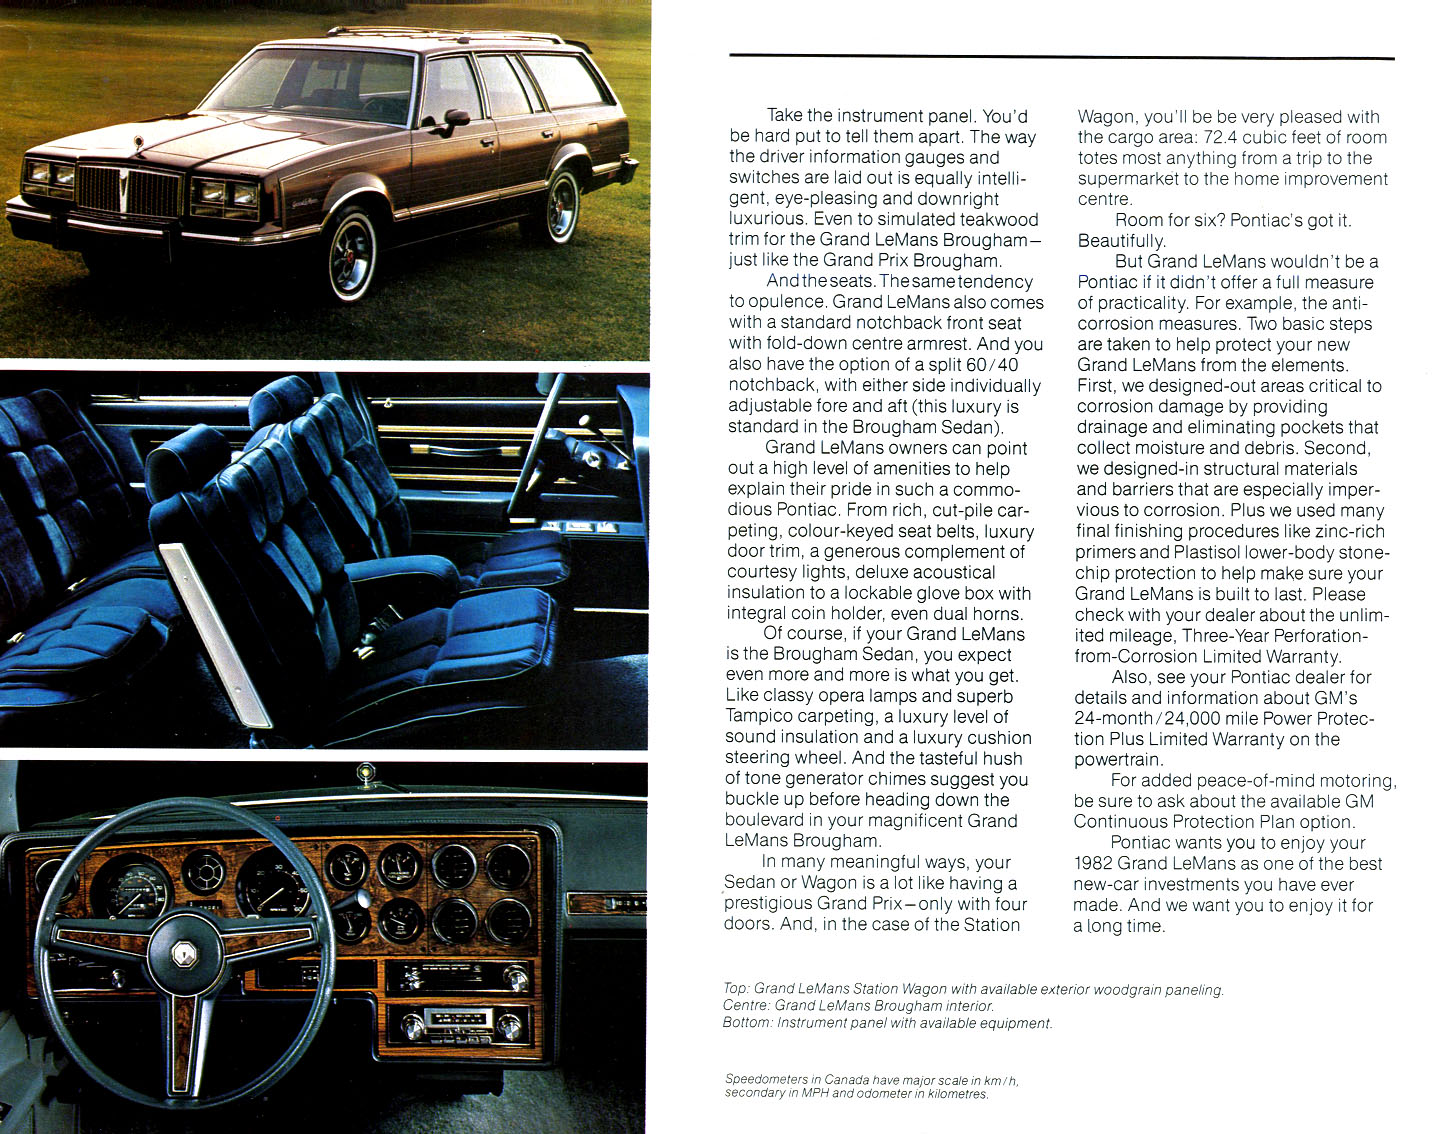 n_1982 Pontiac Grand LeMans-Cdn-03.jpg